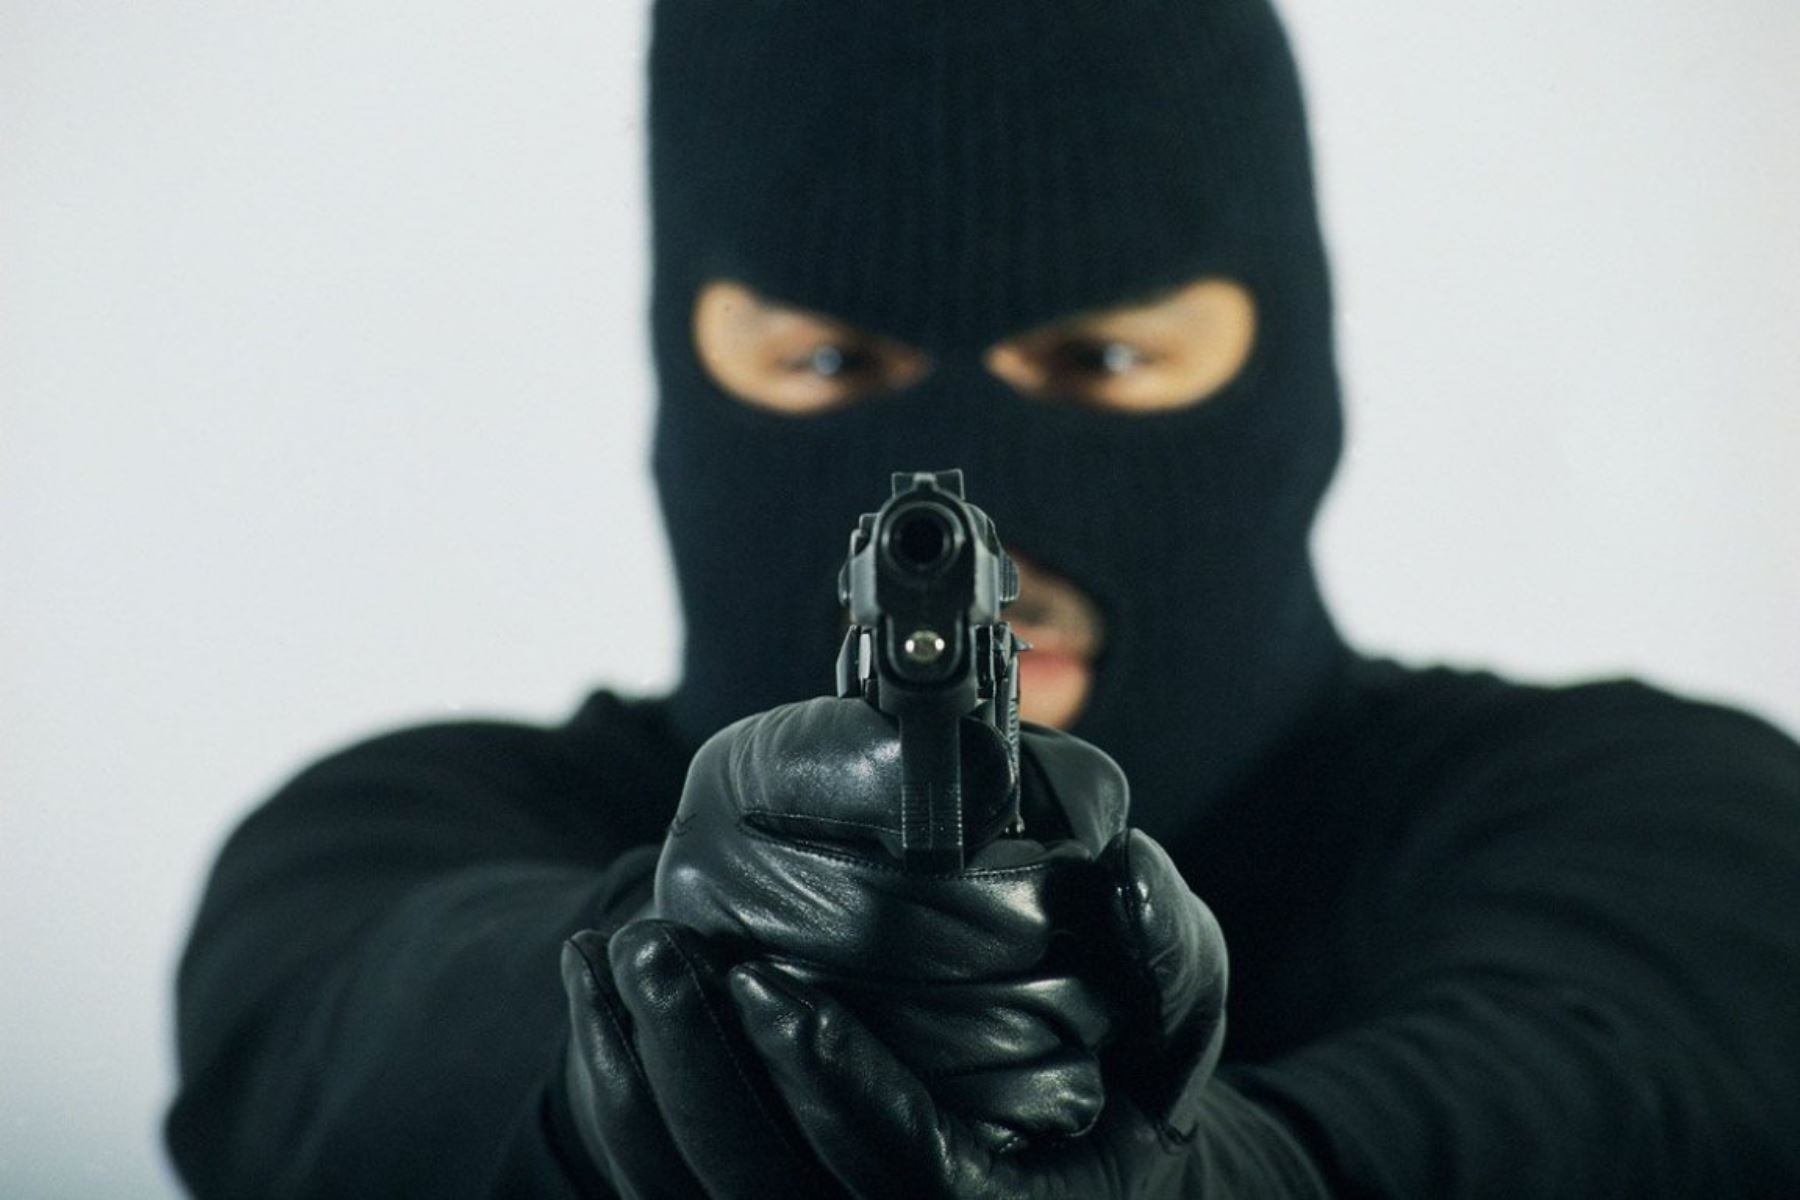 ‘El robo del hombre araña’: conozca el nuevo método utilizado por un ladrón en Miami